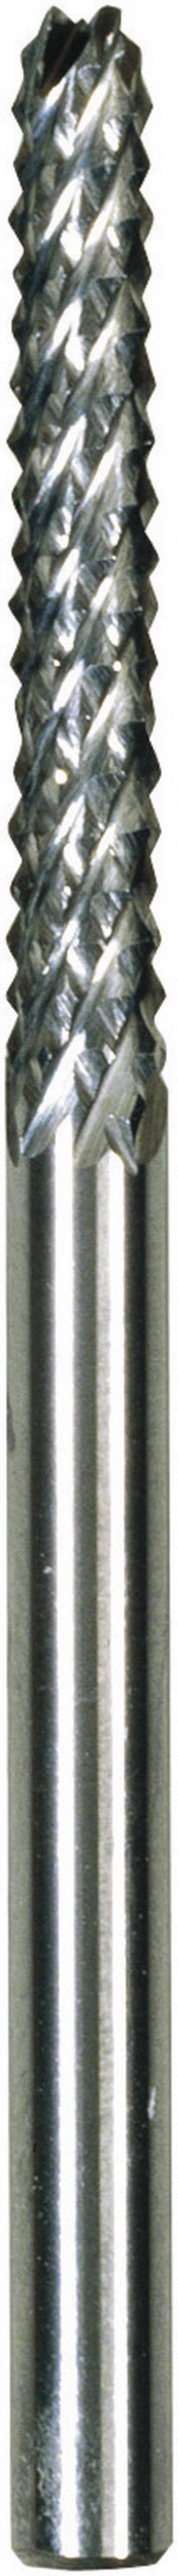 Proxxon Micromot 28 757 rašpľa fréza   3.2 mm Dĺžka 50 mm   Ø hriadeľa 3.2 mm